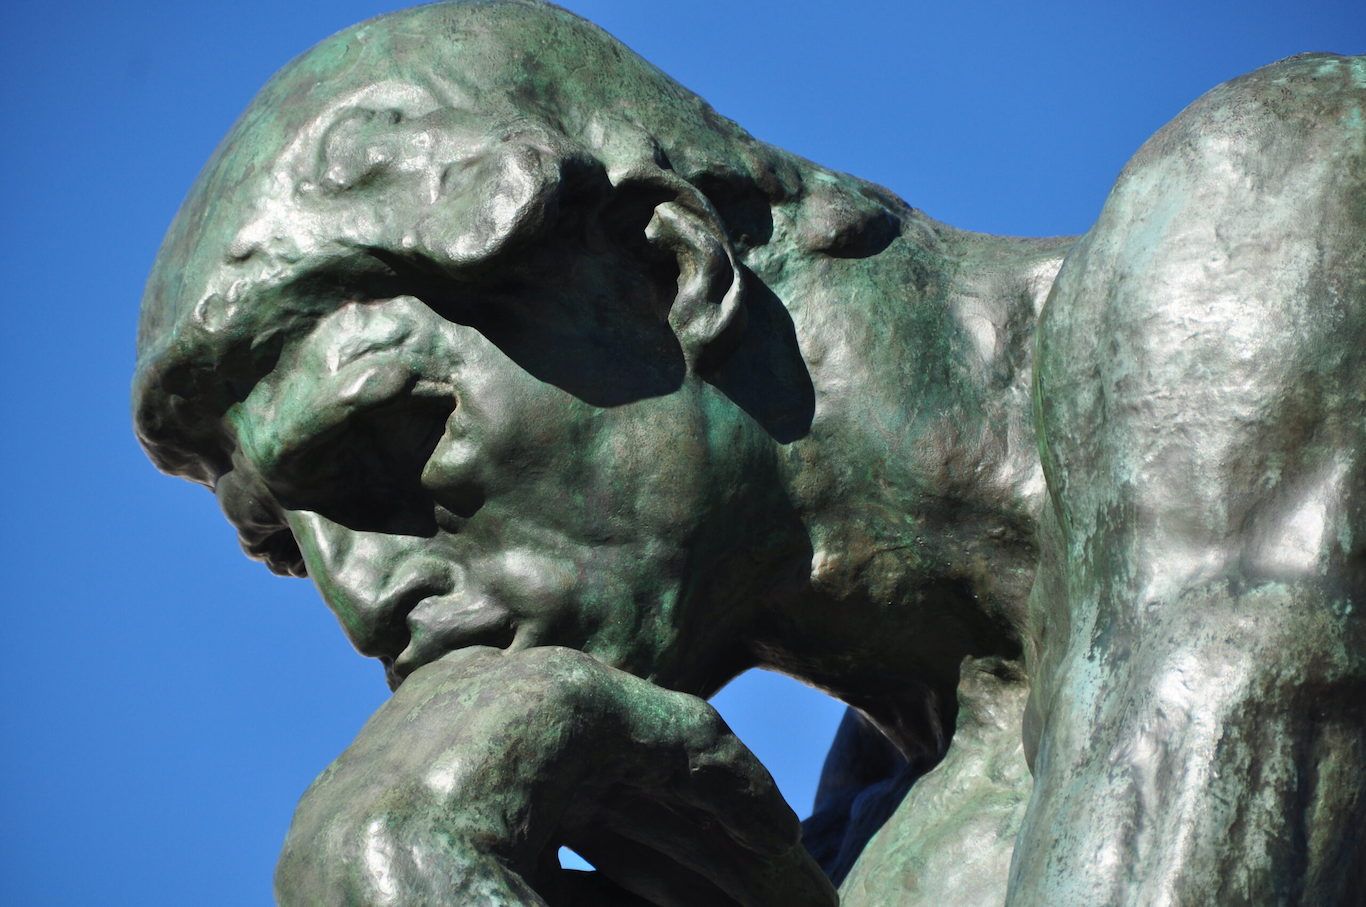 El pensador de Rodin.